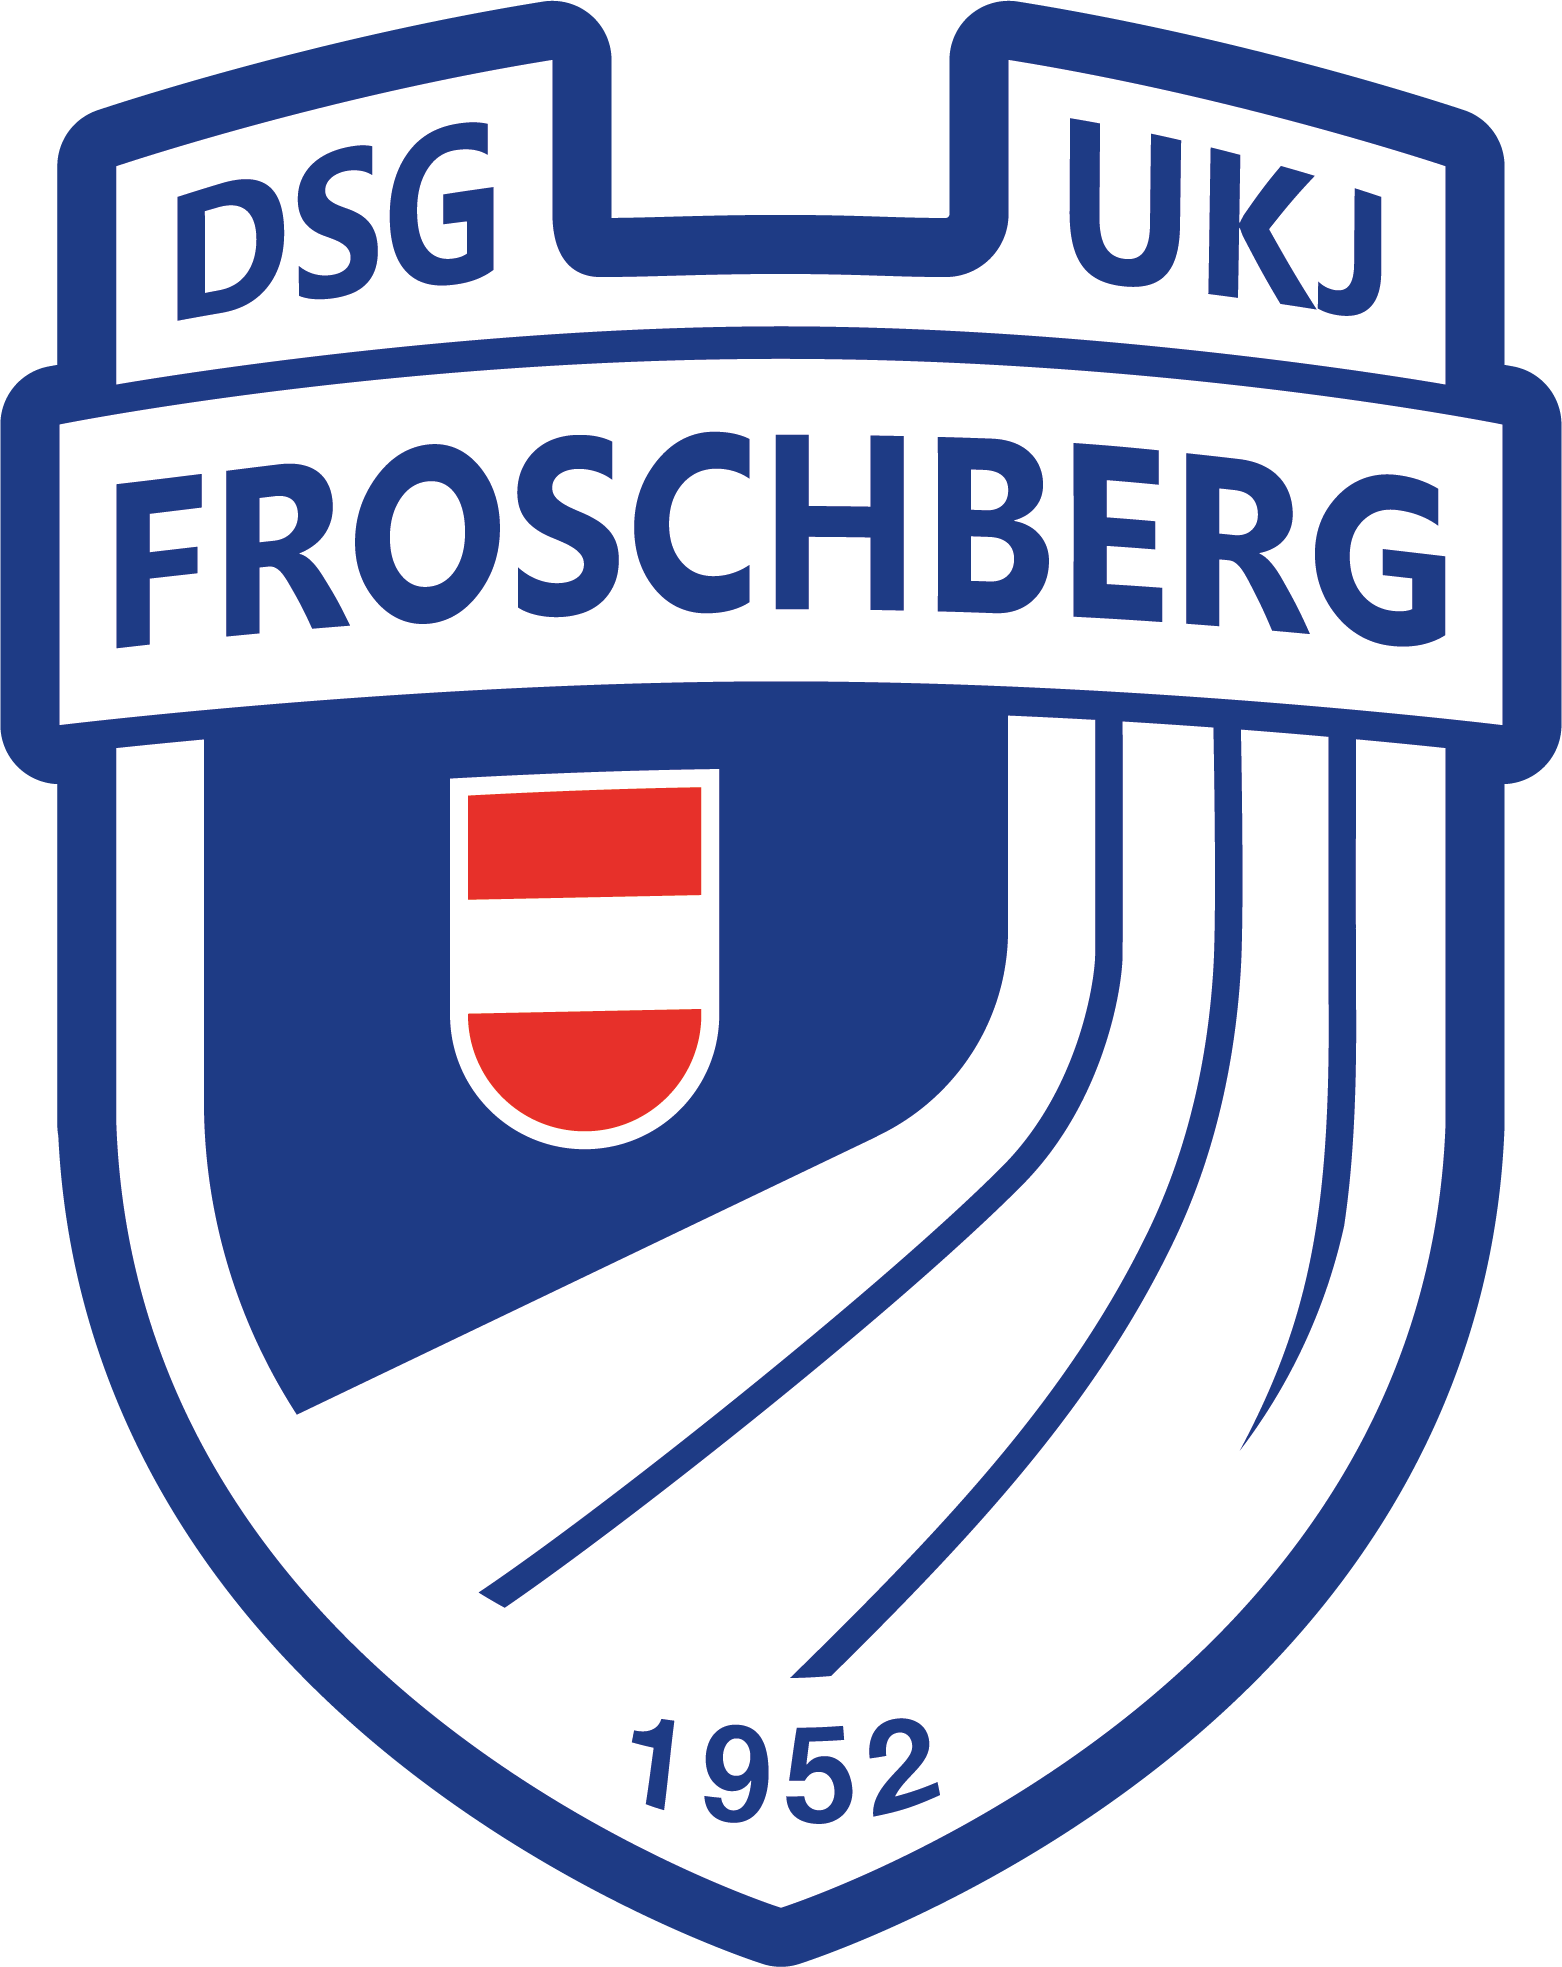 DSG UKJ Froschberg